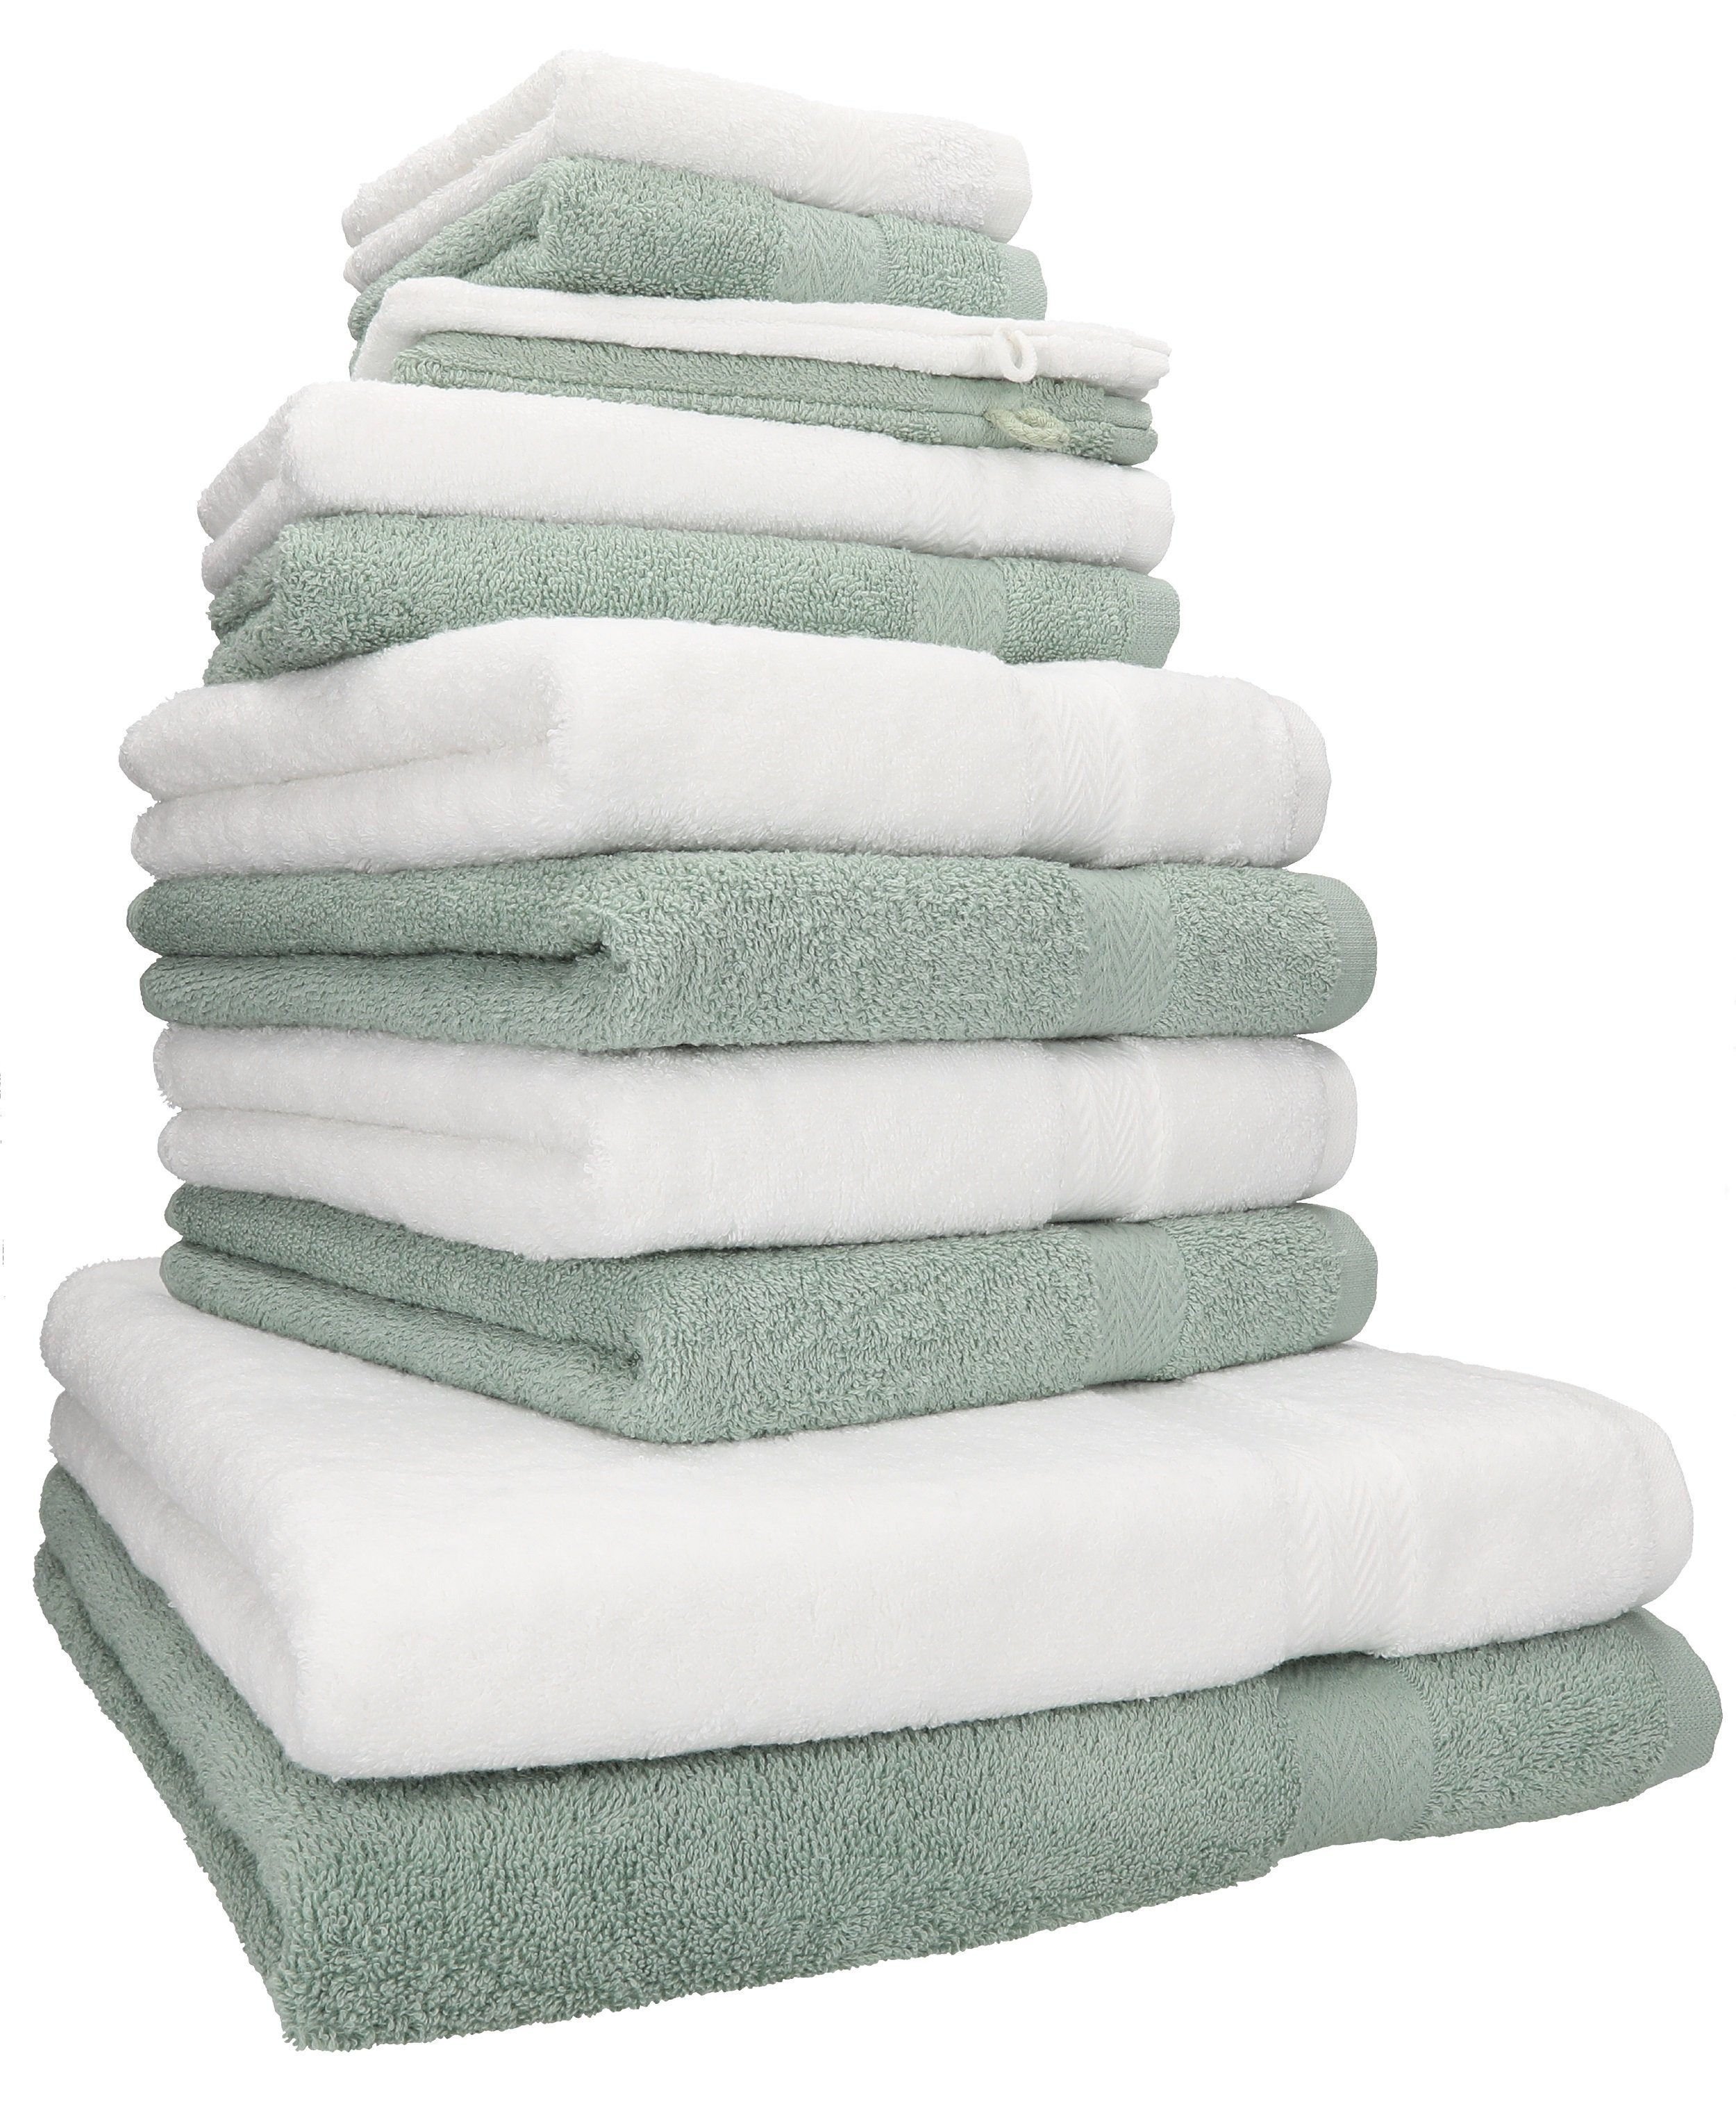 100% Set Handtuch Betz (12-tlg) Set weiß/heugrün, Baumwolle, Premium Farbe Handtuch 12-TLG.